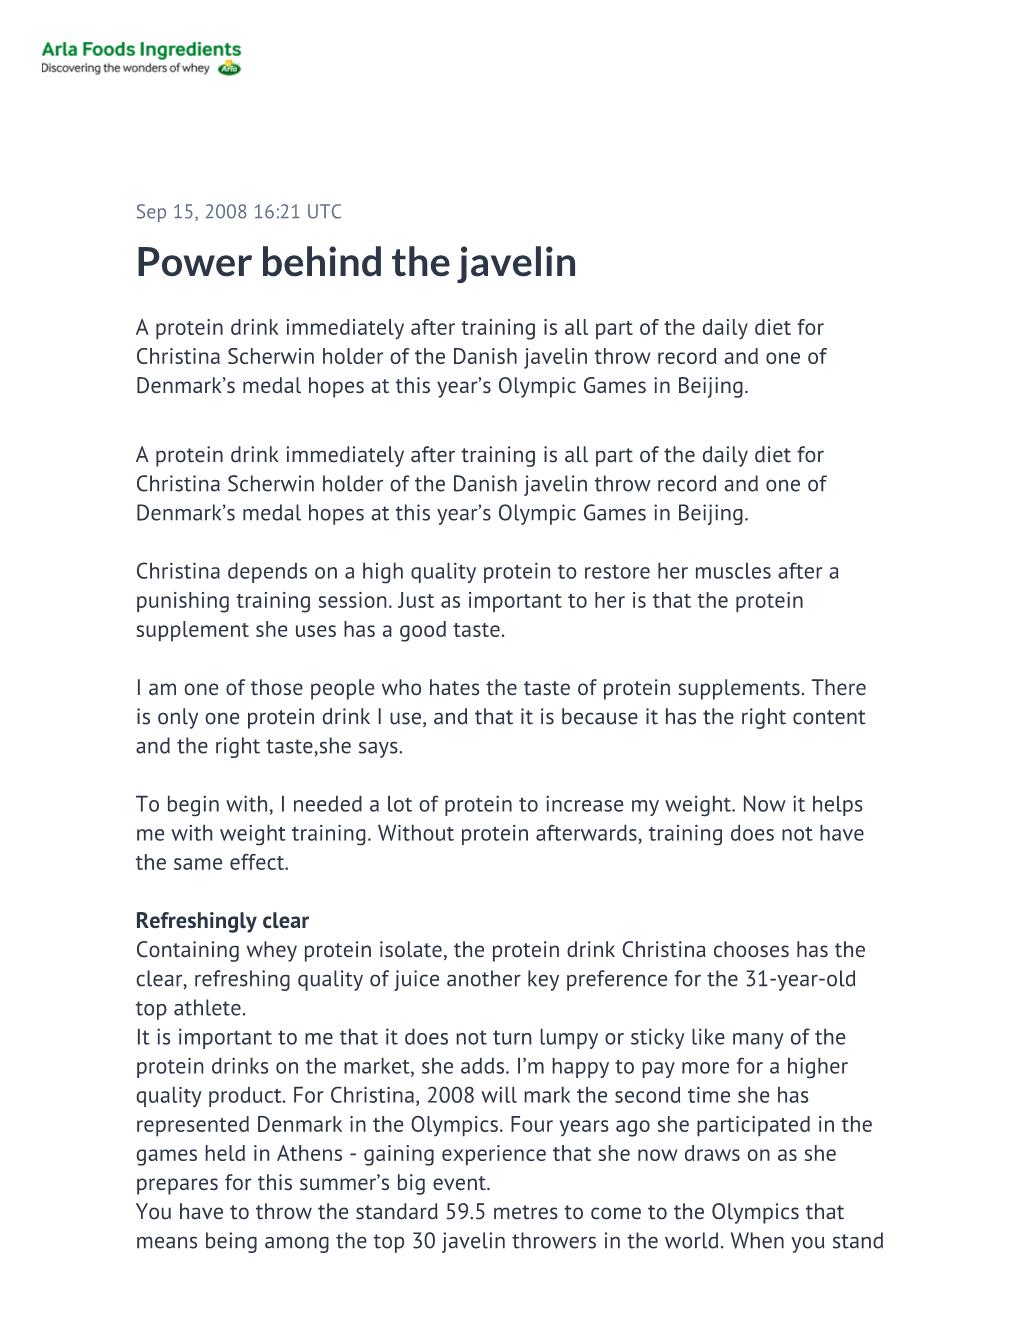 Power Behind the Javelin